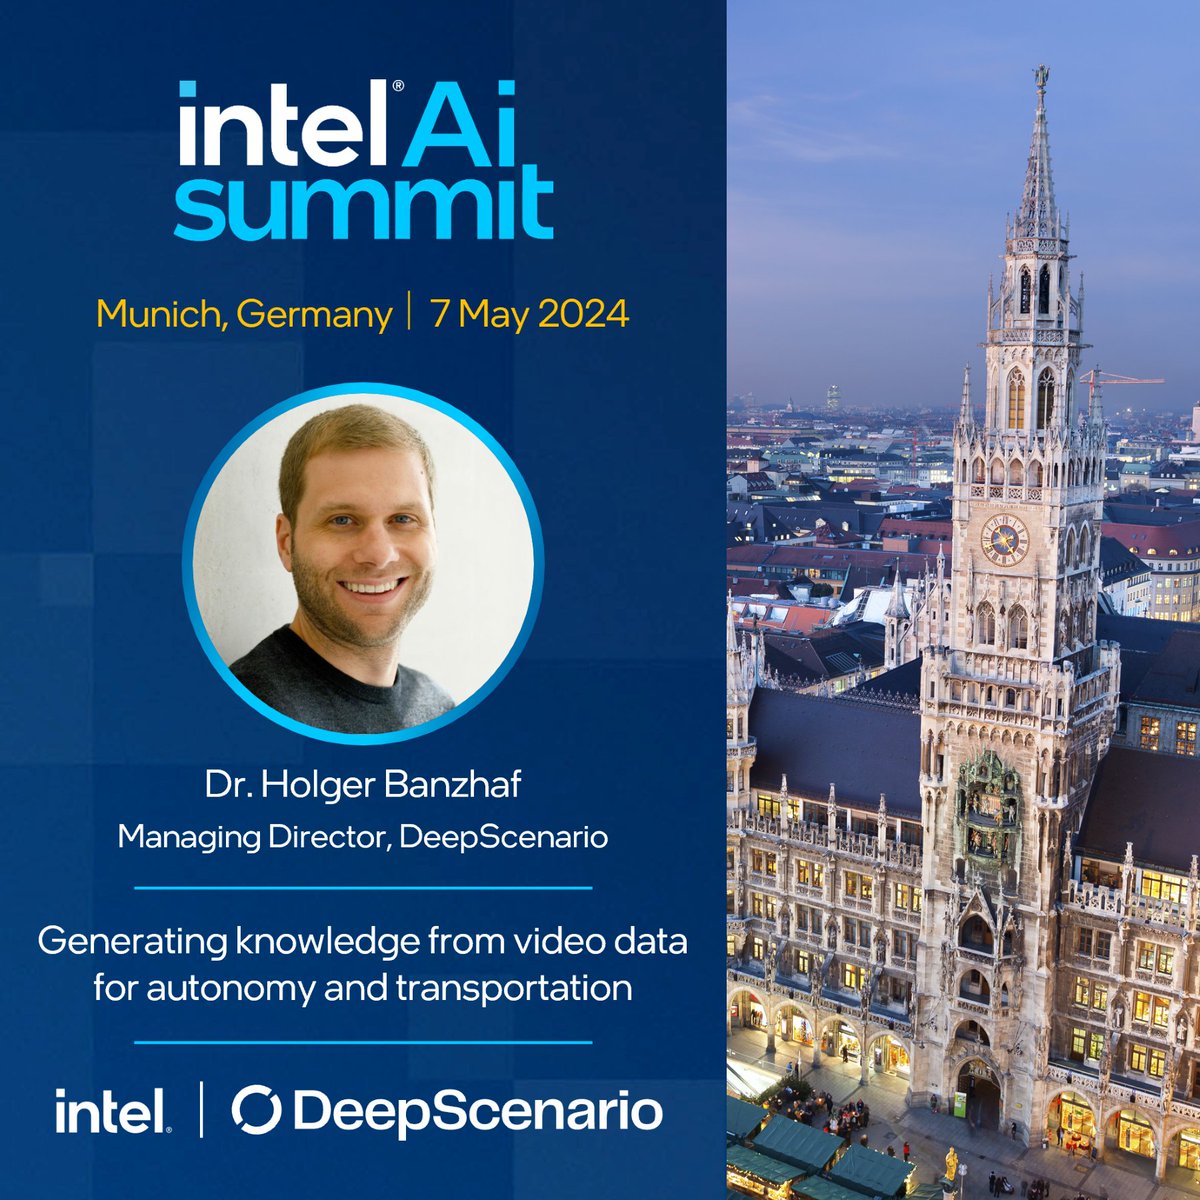 Besucht unser #IntelAISummit am 7. Mai in München, dem Event für KI-Entwickler & -Experten. Hier erfahrt ihr von Dr. Holger Banzhaf, wie sein Unternehmen #DeepScenario intelligente autonome Systeme mit #KI realisiert. Registrierung 👉 intel.ly/44e1vQL